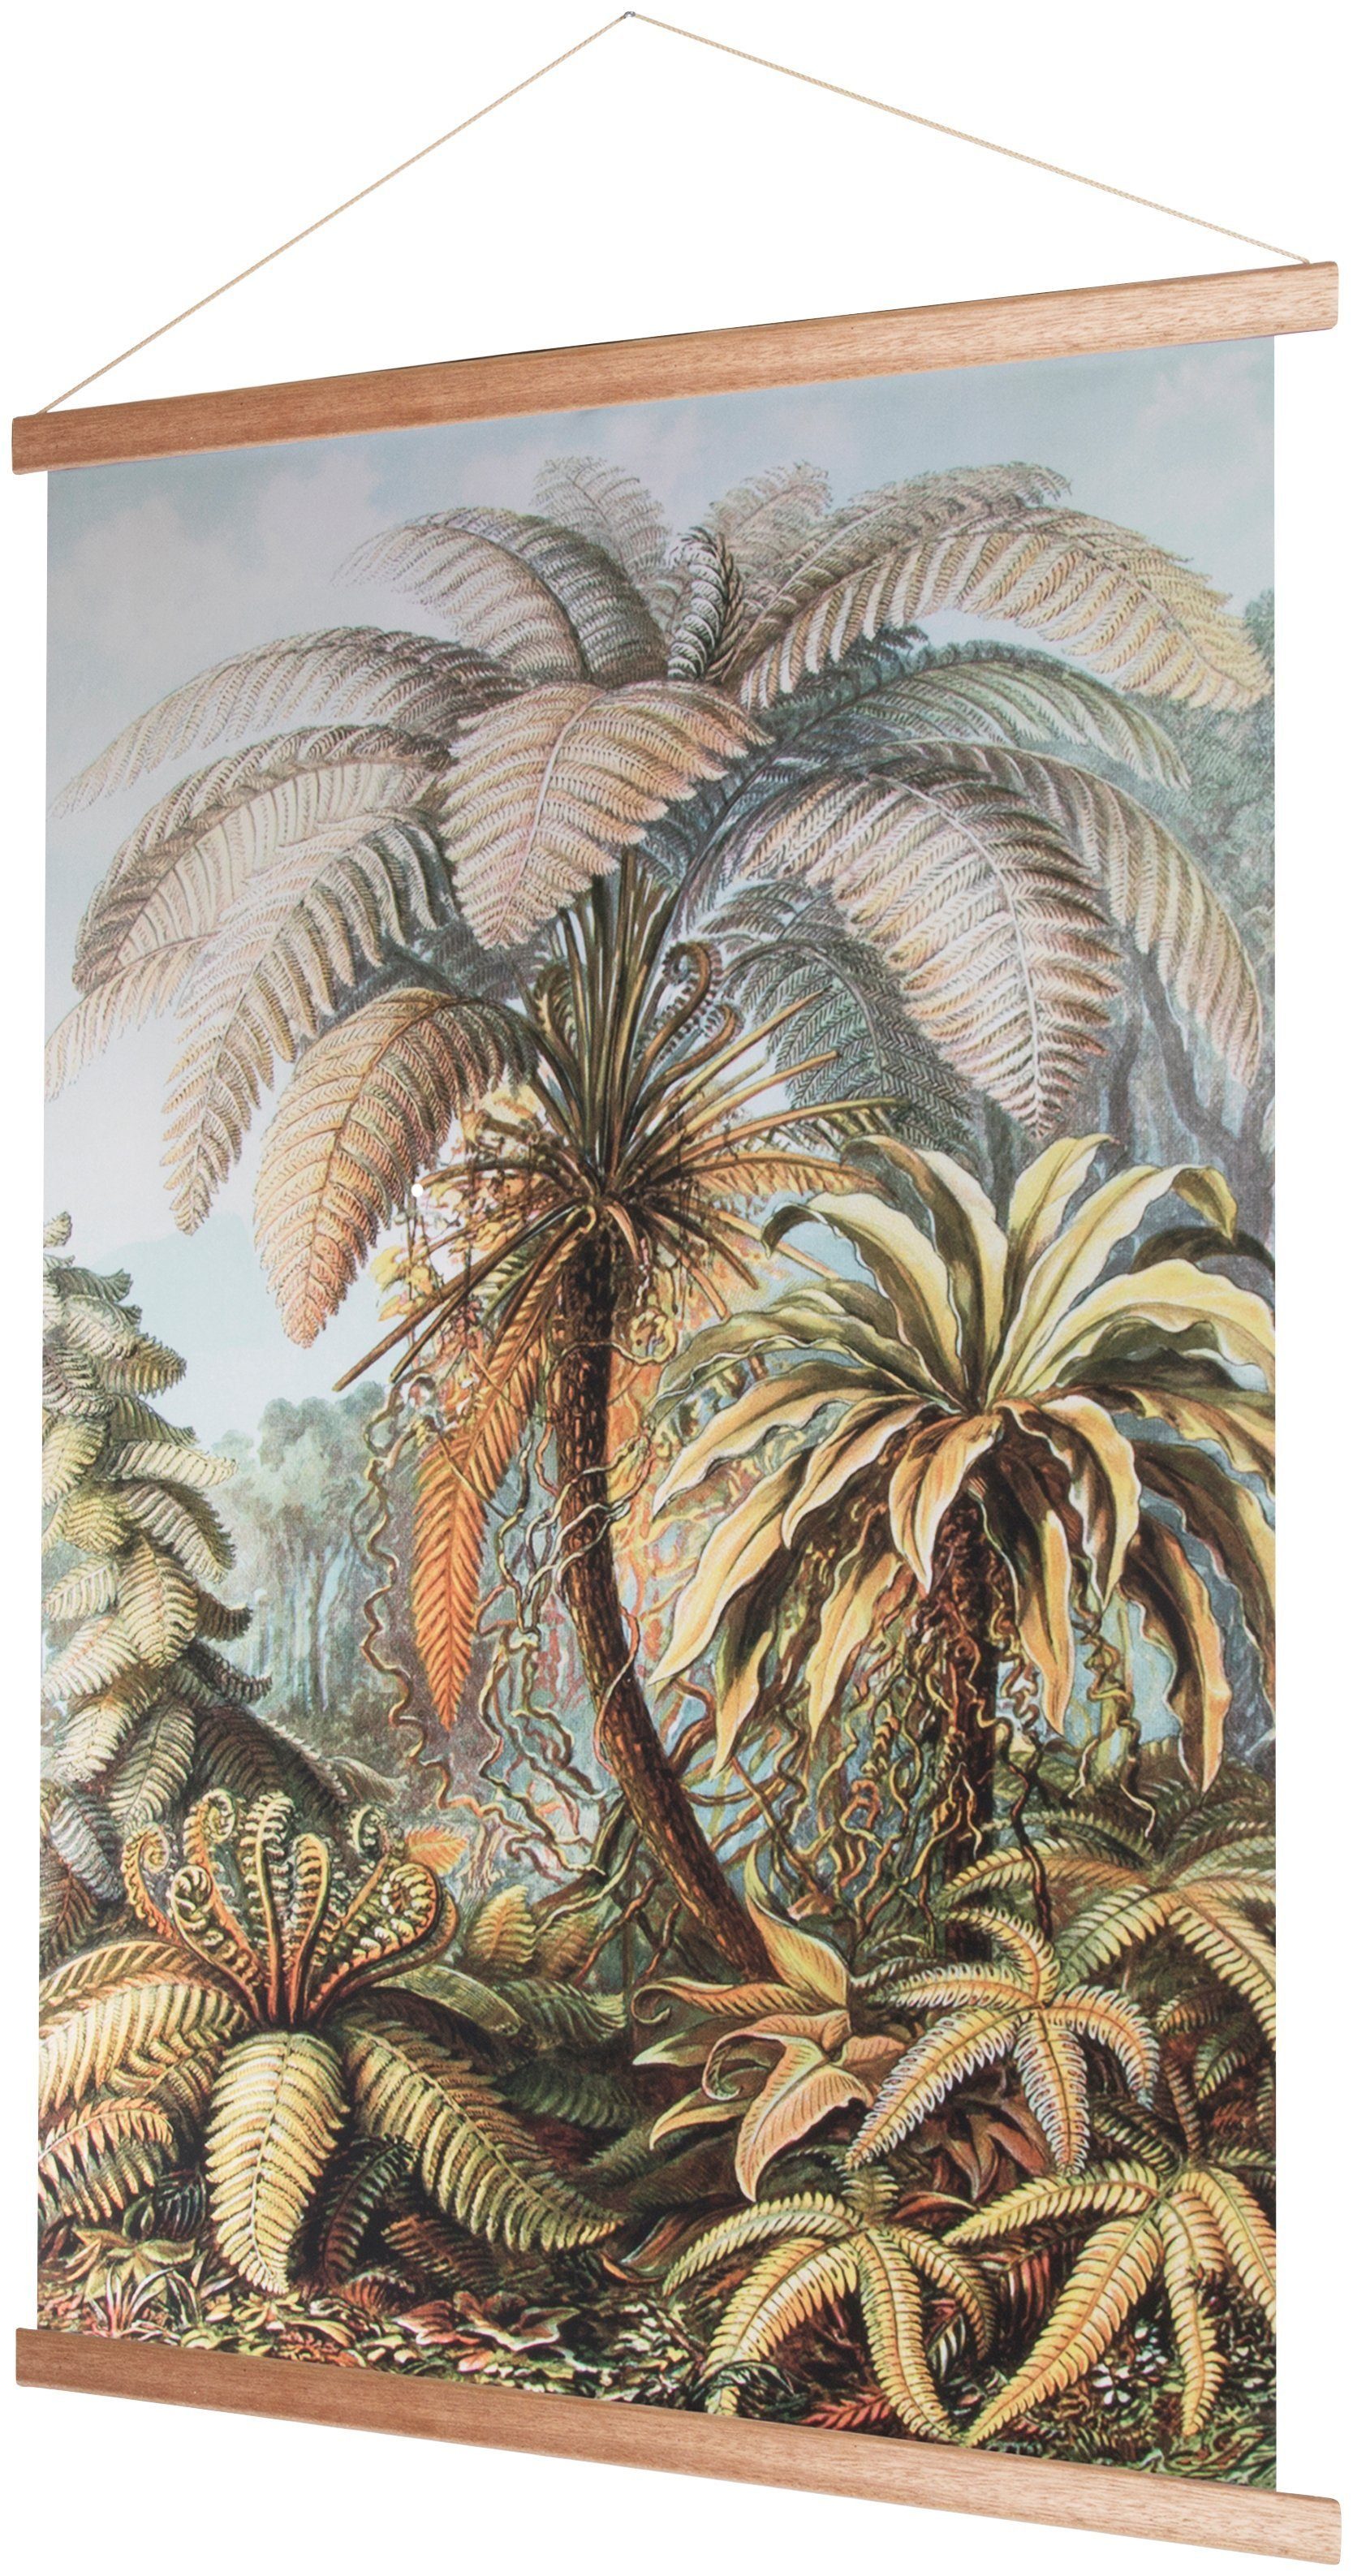 Pflanzen, the Dschungel, home Poster Art for 100x70cm, Poster, Bild, Wandbild, Wandposter